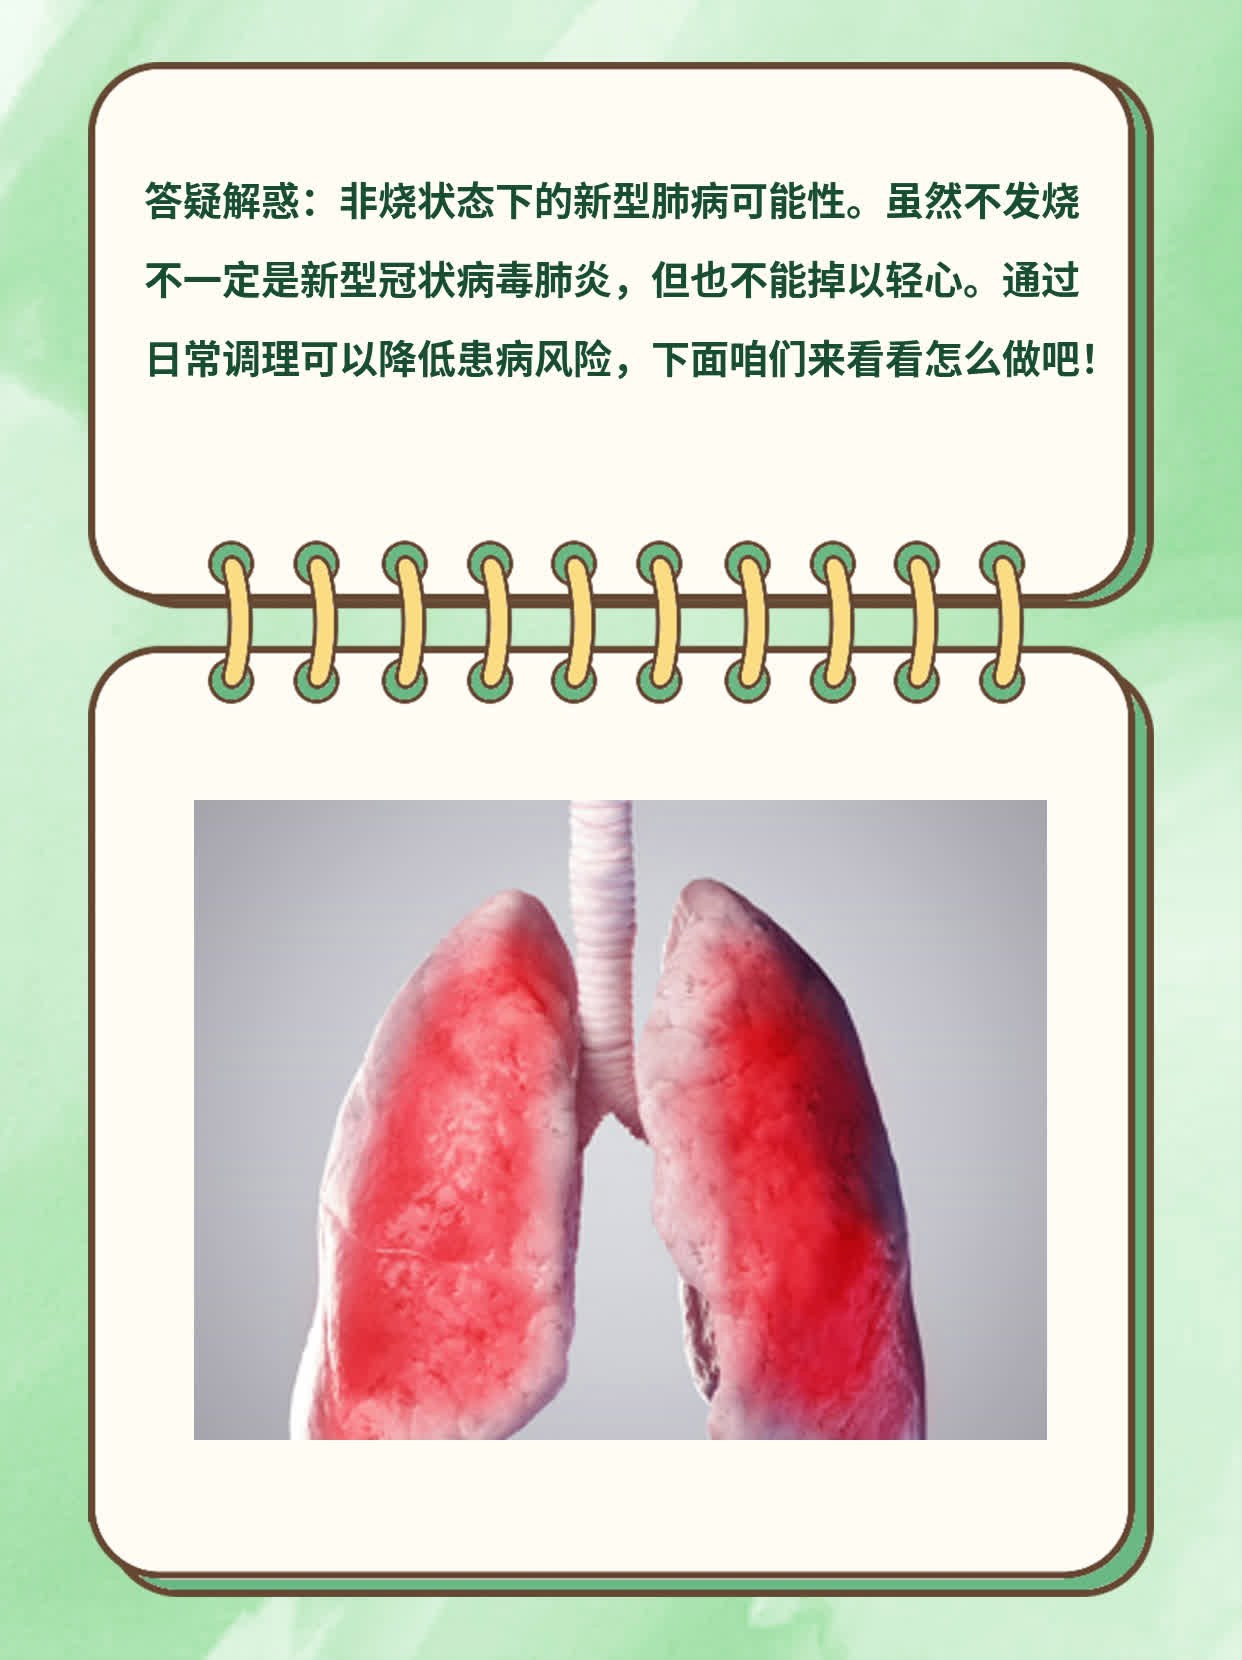 「答疑解惑」：非烧状态下的新型肺病可能性